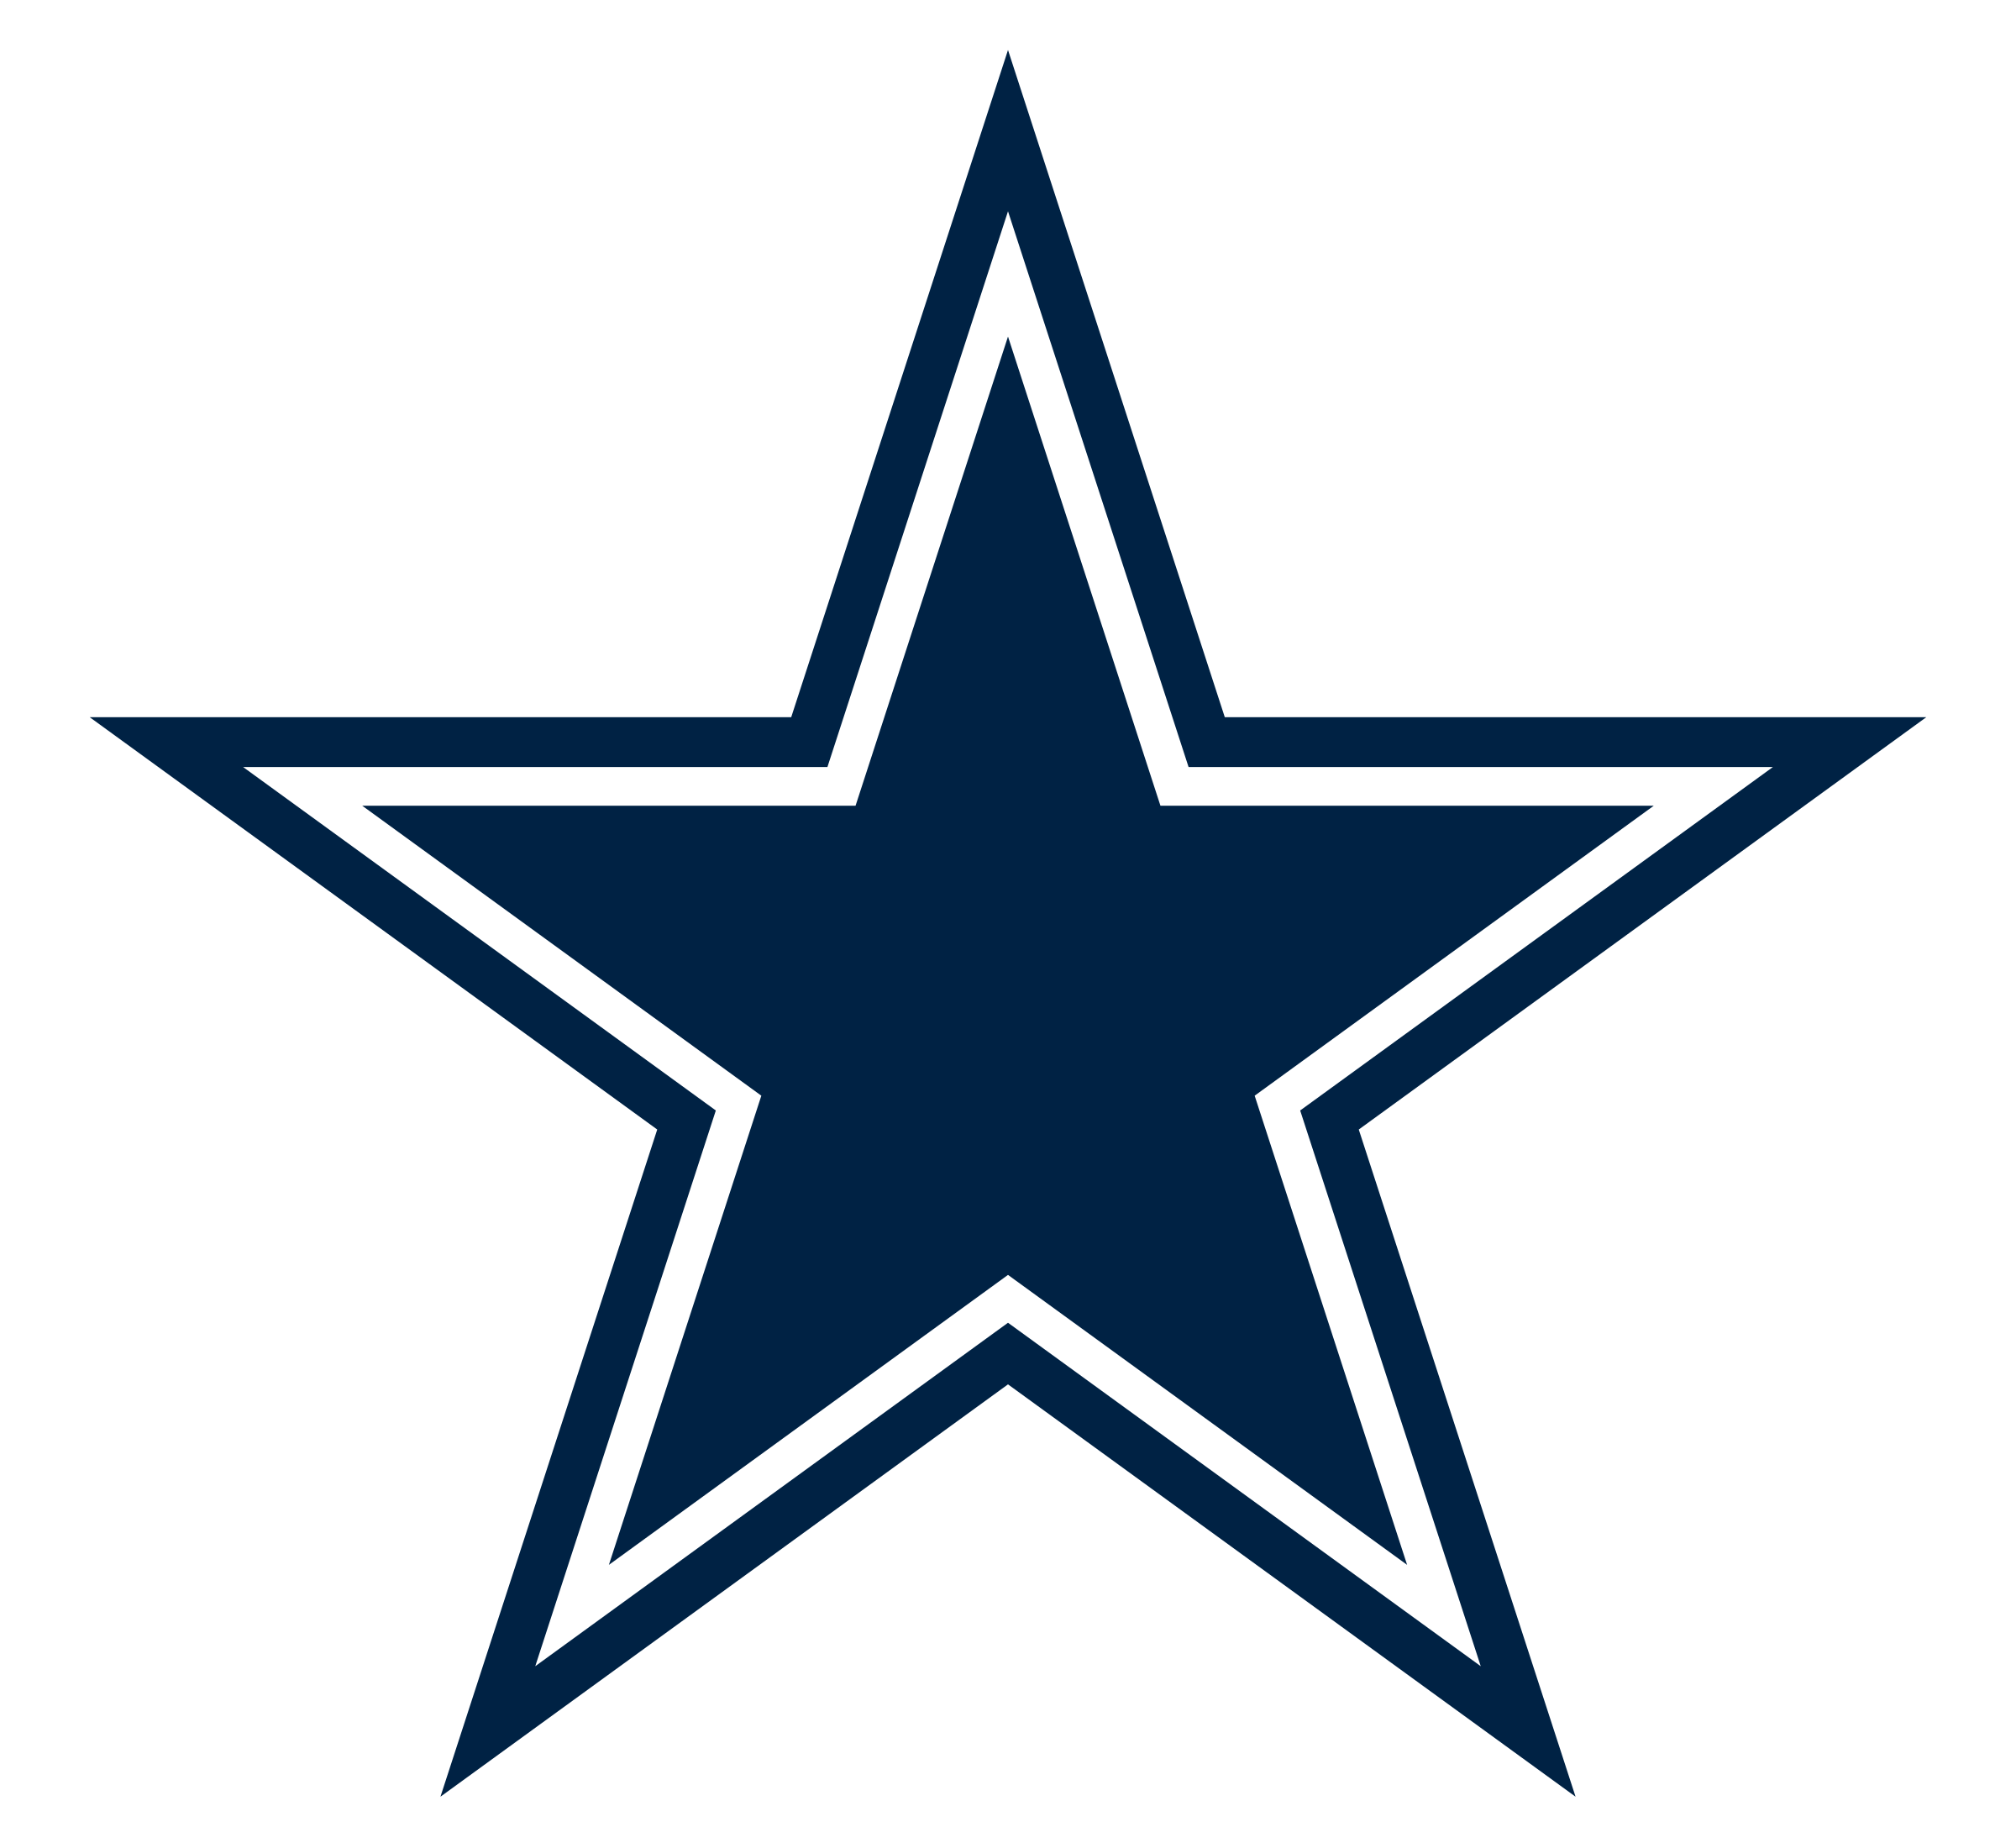 Dallas Cowboys Logo Png Transparent & Svg Vector - Pluspng Pluspng, Dallas Cowboys Logo PNG - Free PNG